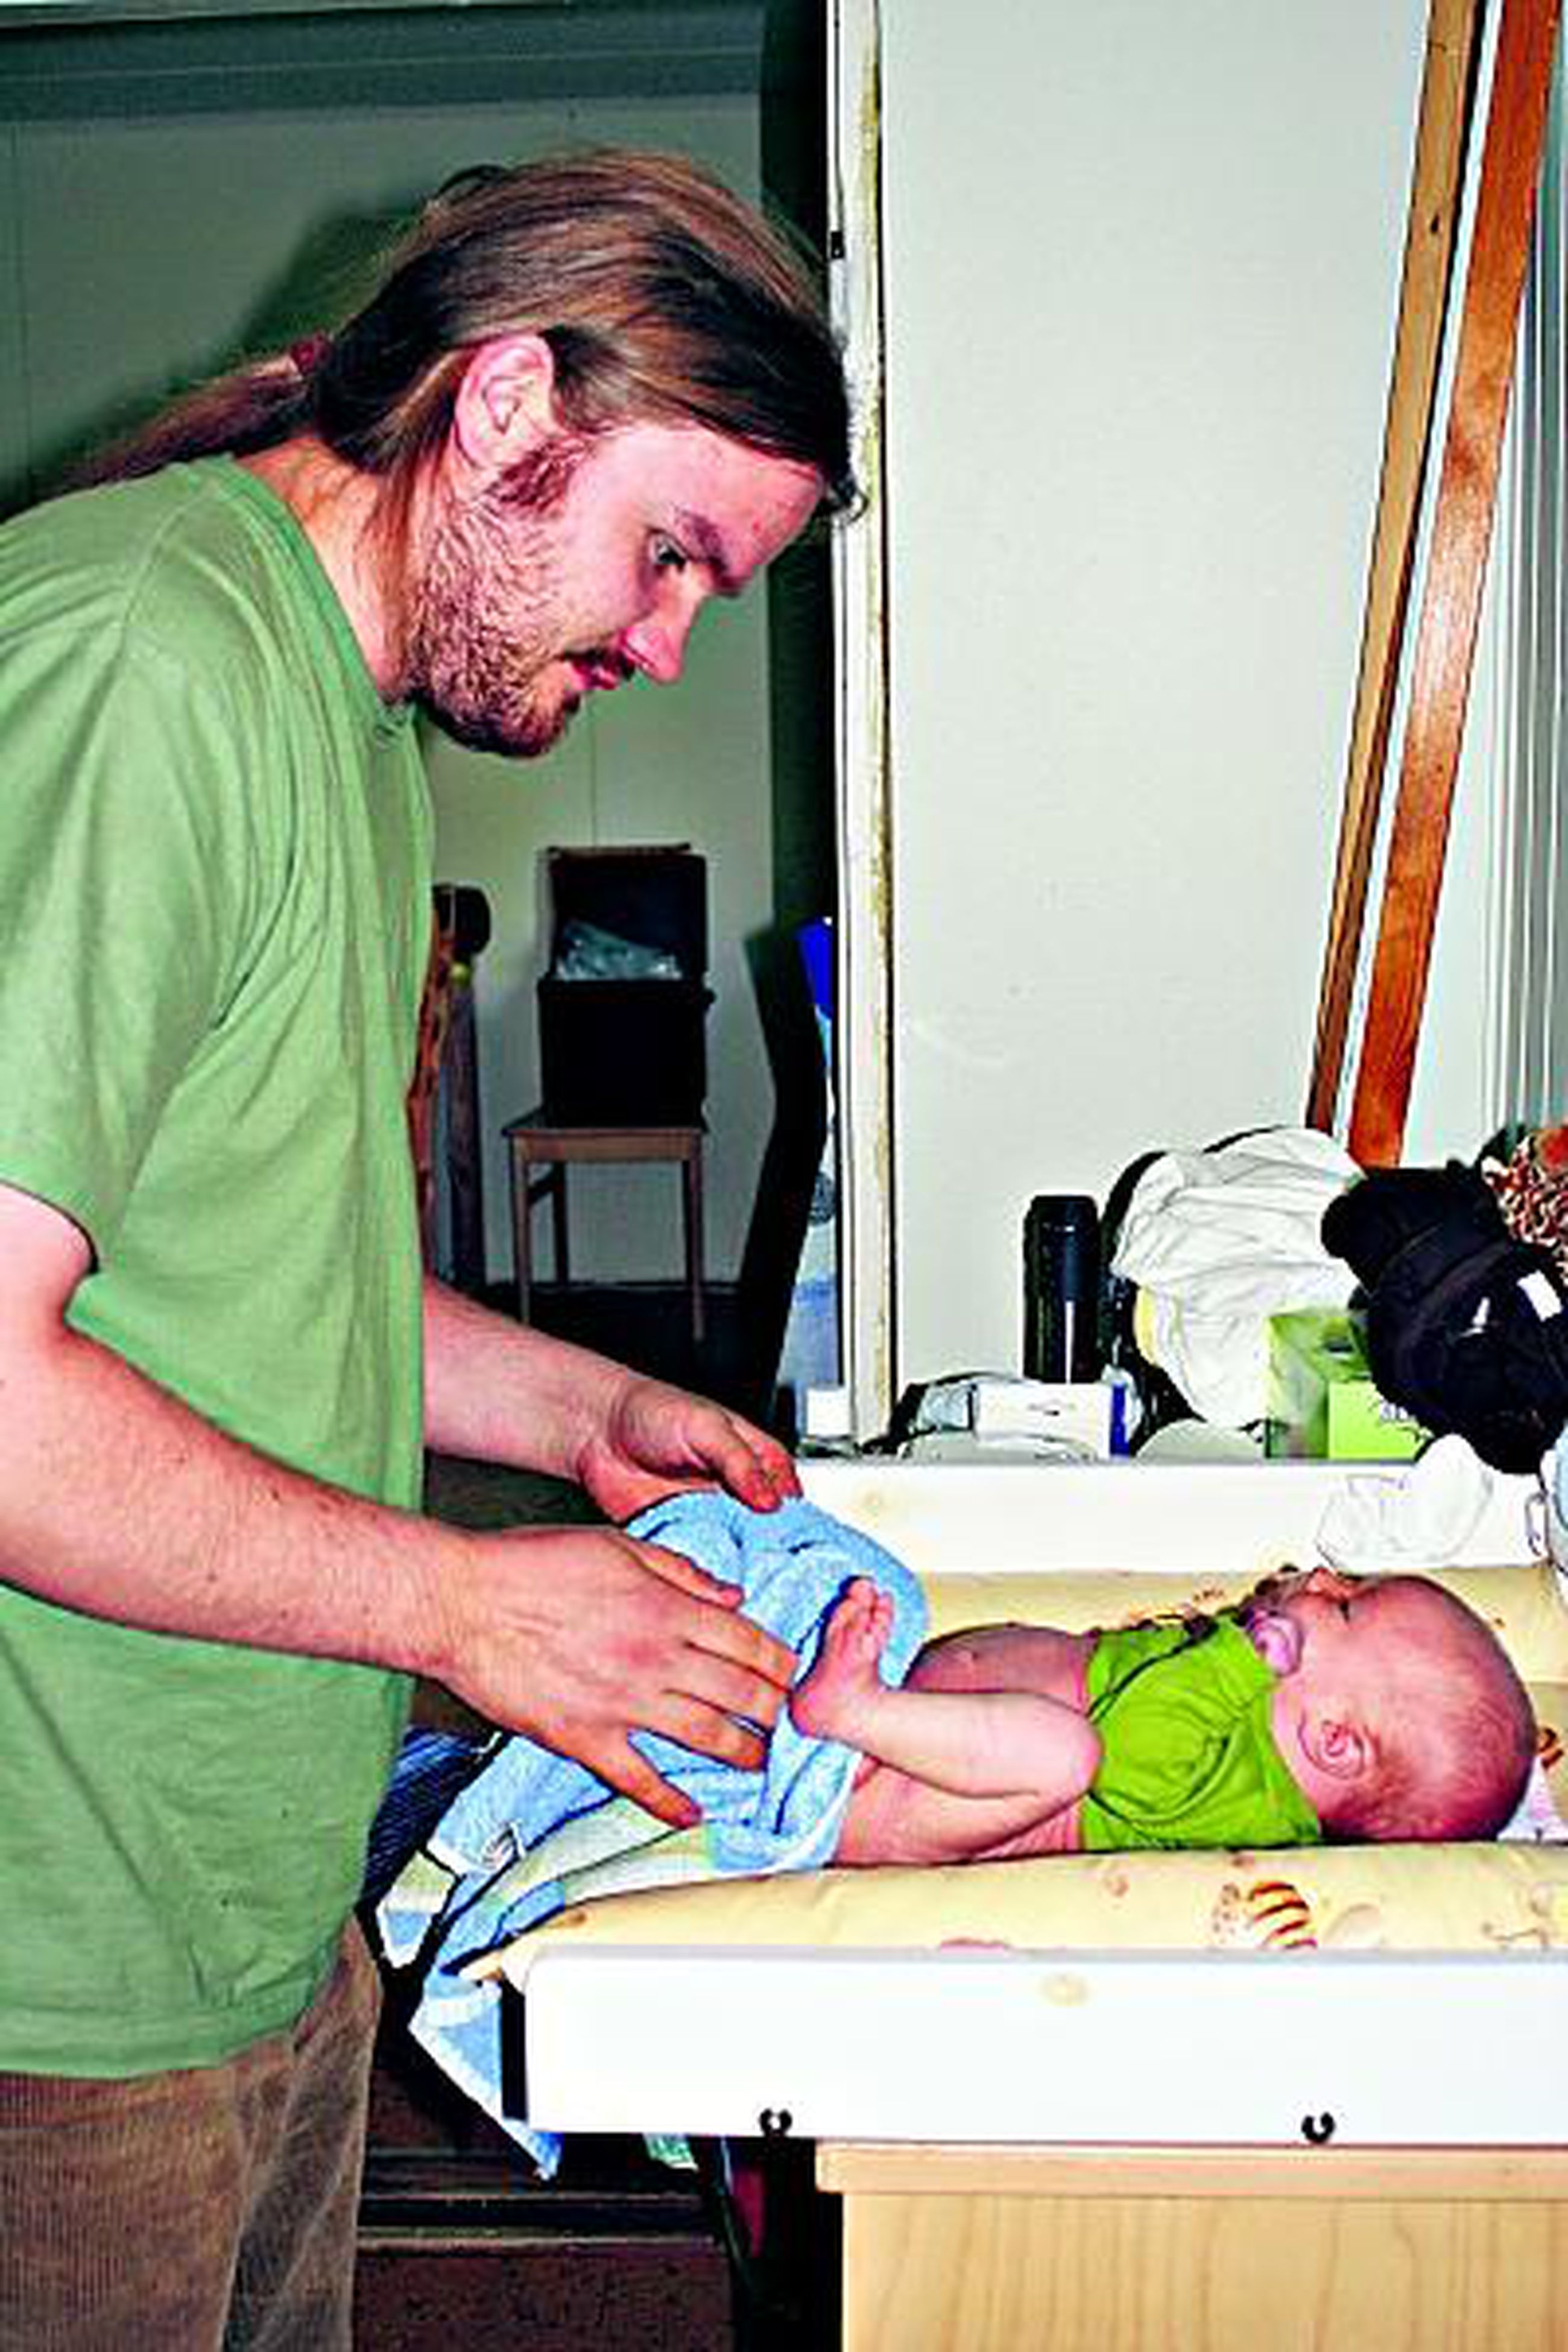 Vauvan hoitoon opastusta kädestä pitäen | Kaleva